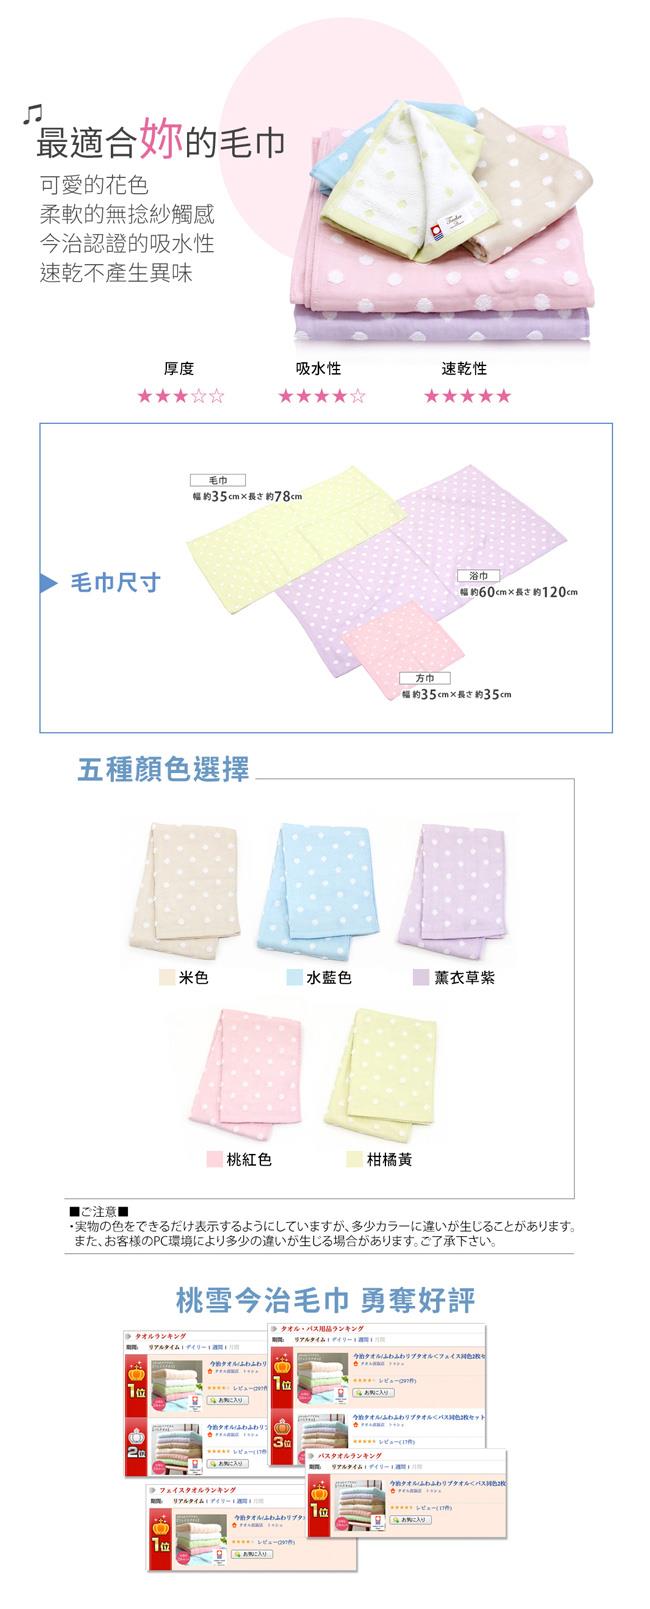 日本桃雪今治小圓點紗布方巾超值兩件組(水藍色)